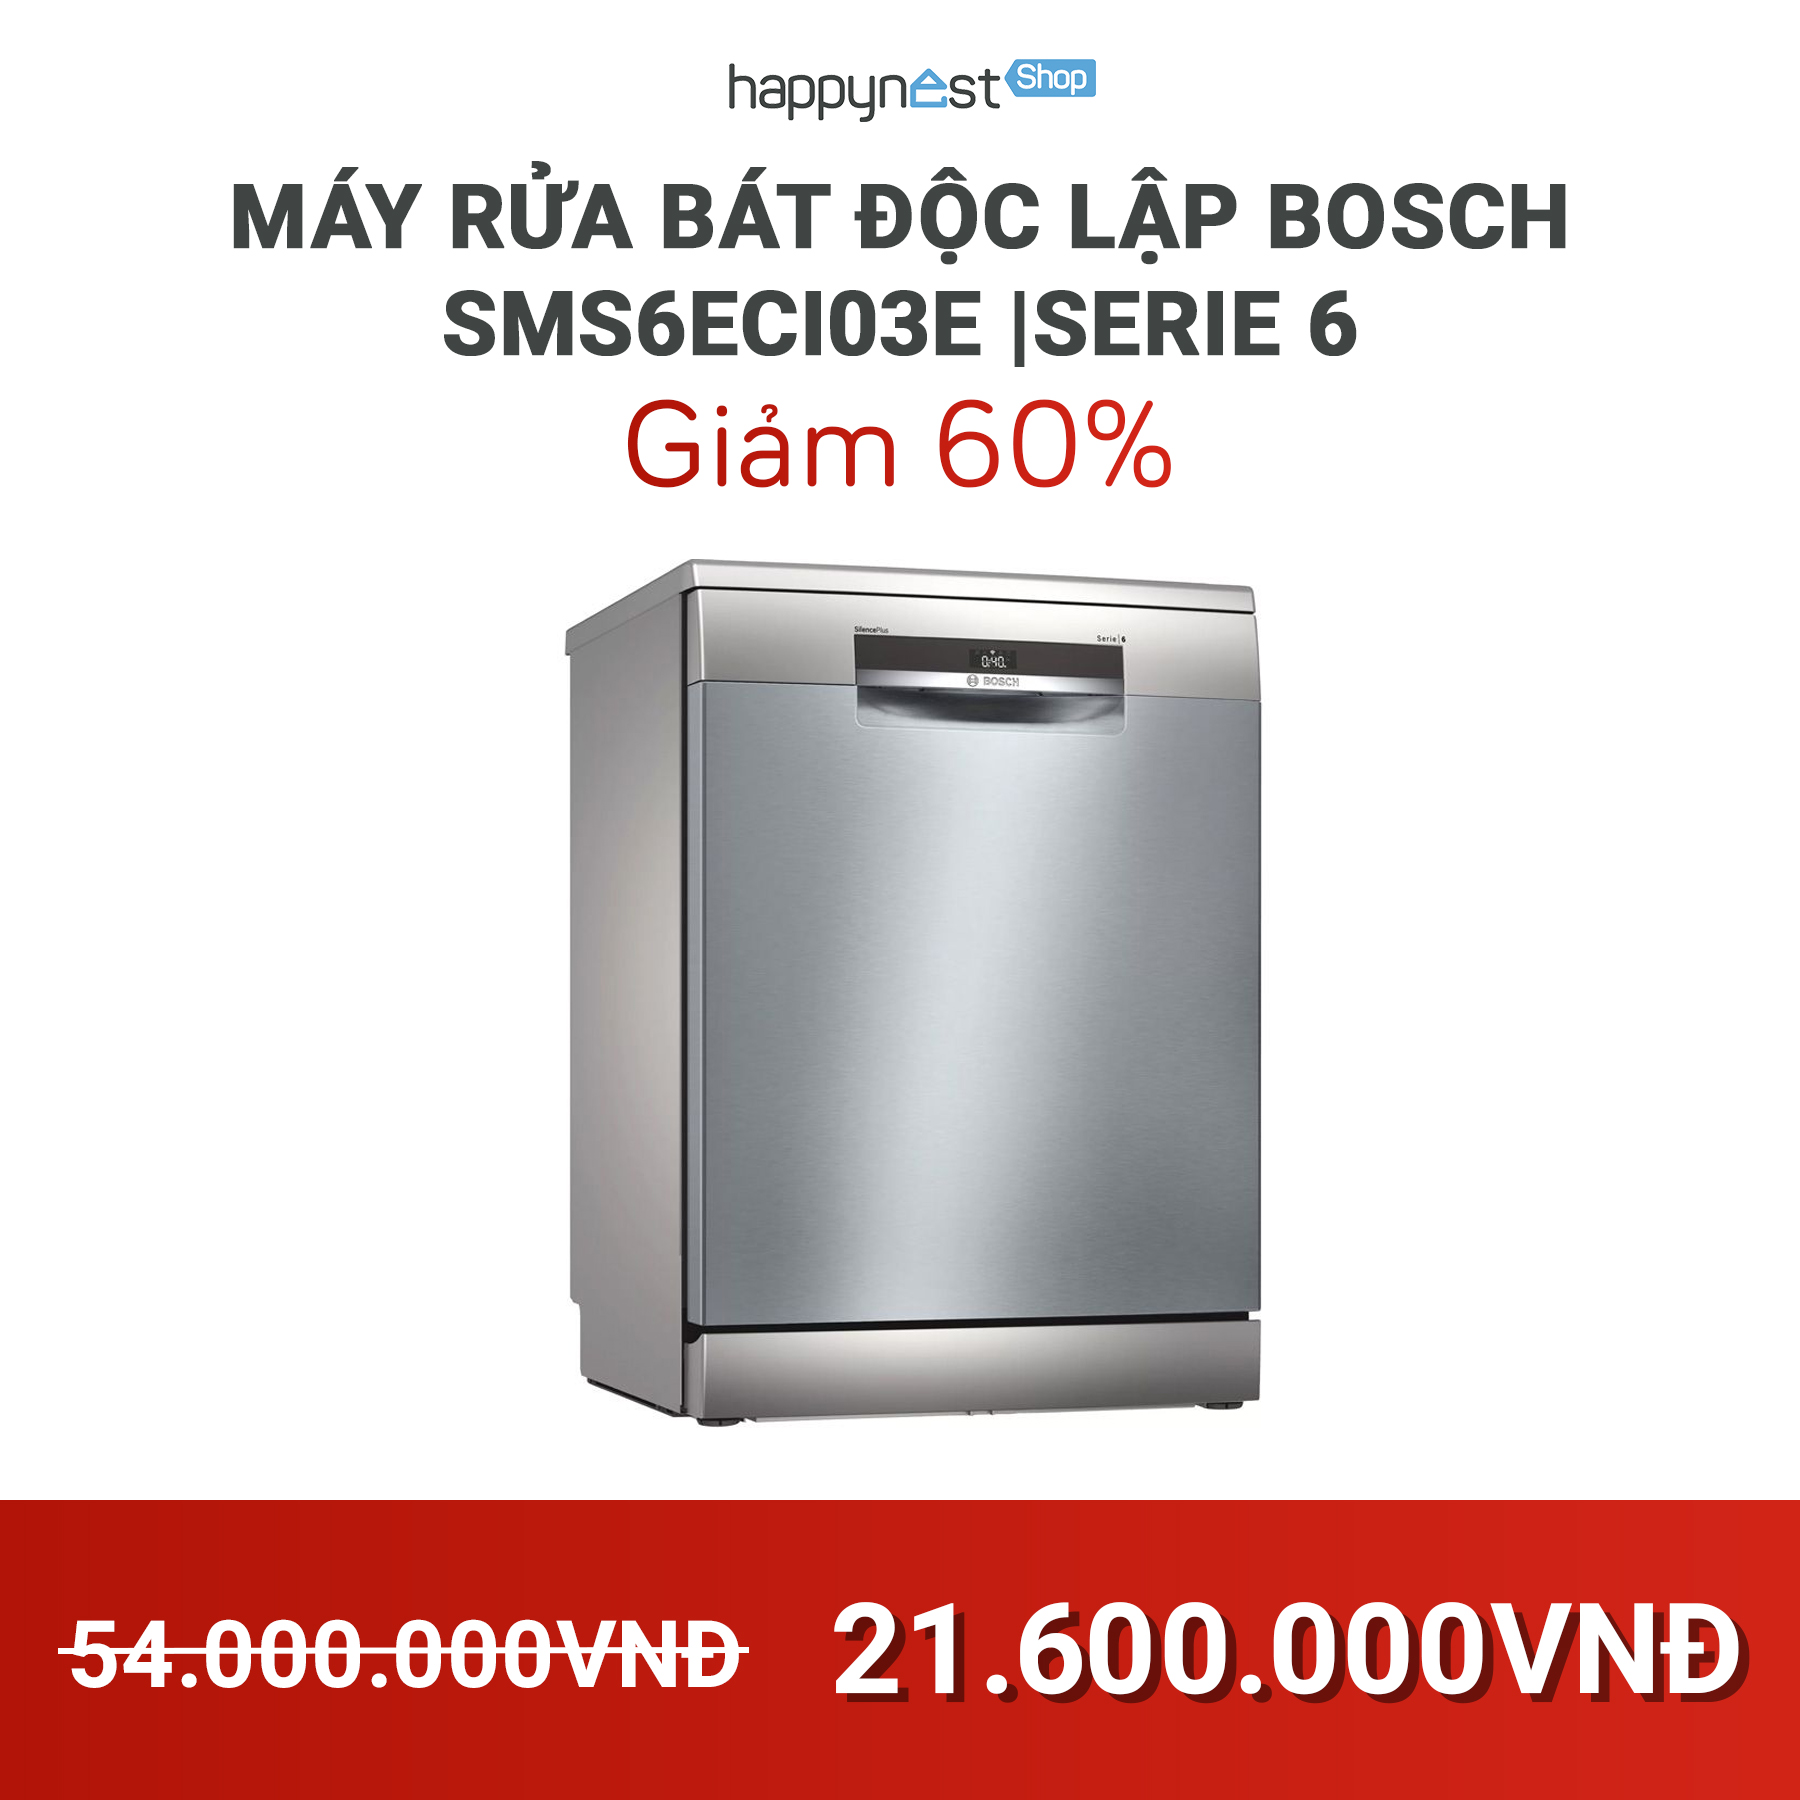 Máy rửa bát Bosch SMS6ECI03E được người dùng đánh giá cao về hiệu quả làm sạch và độ ồn thấp